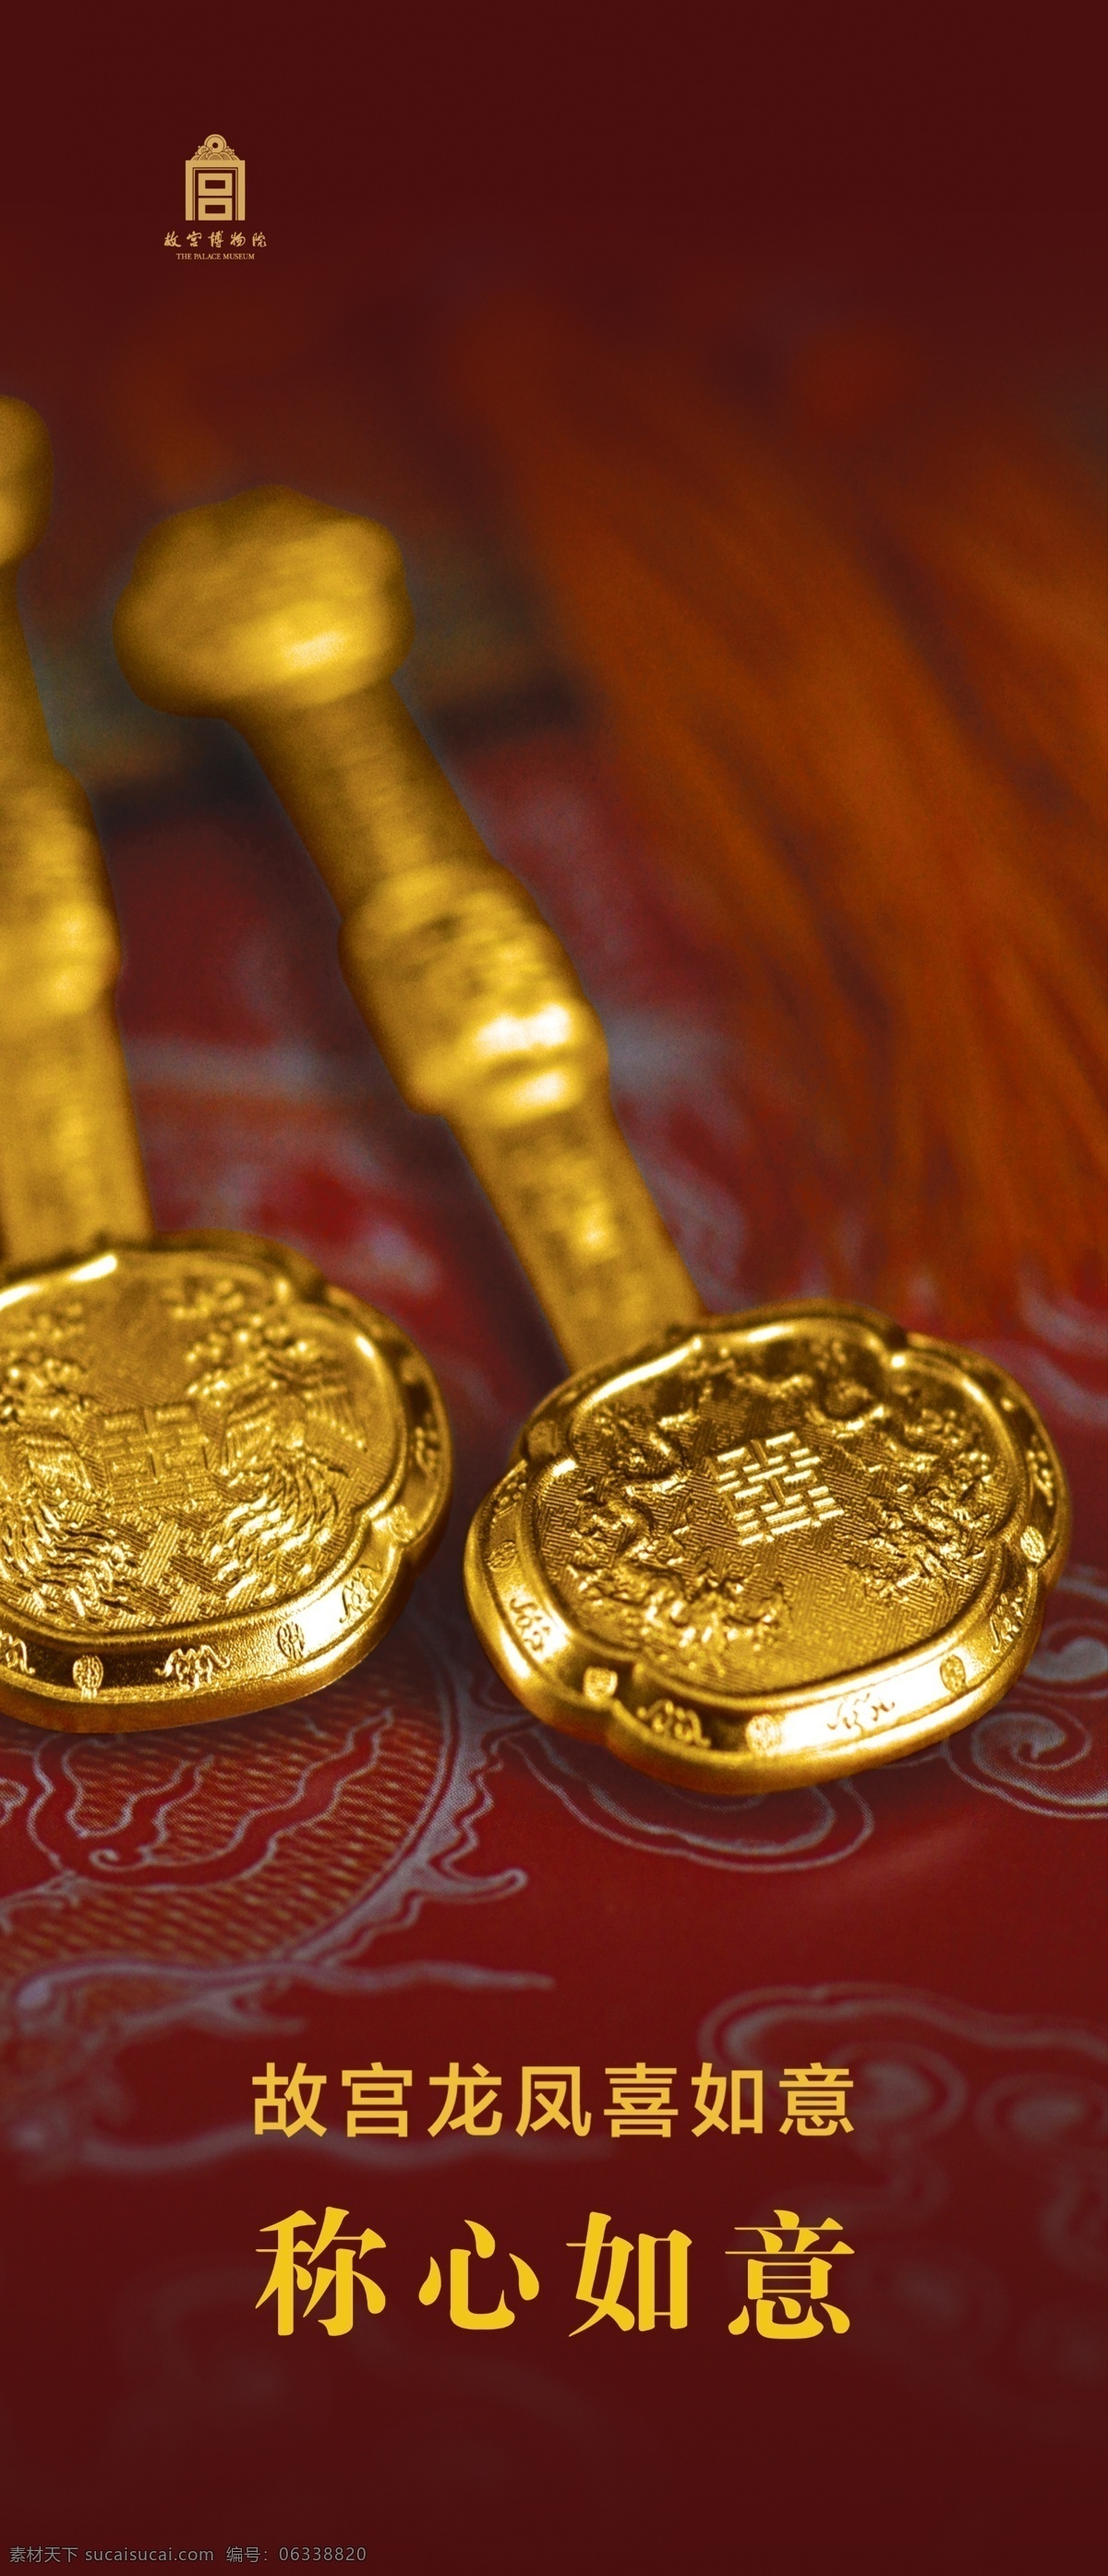 黄金如意 黄金 黄金饰品 金如意 如意素材 黄金素材 故宫博物院 金饰 黄金元素